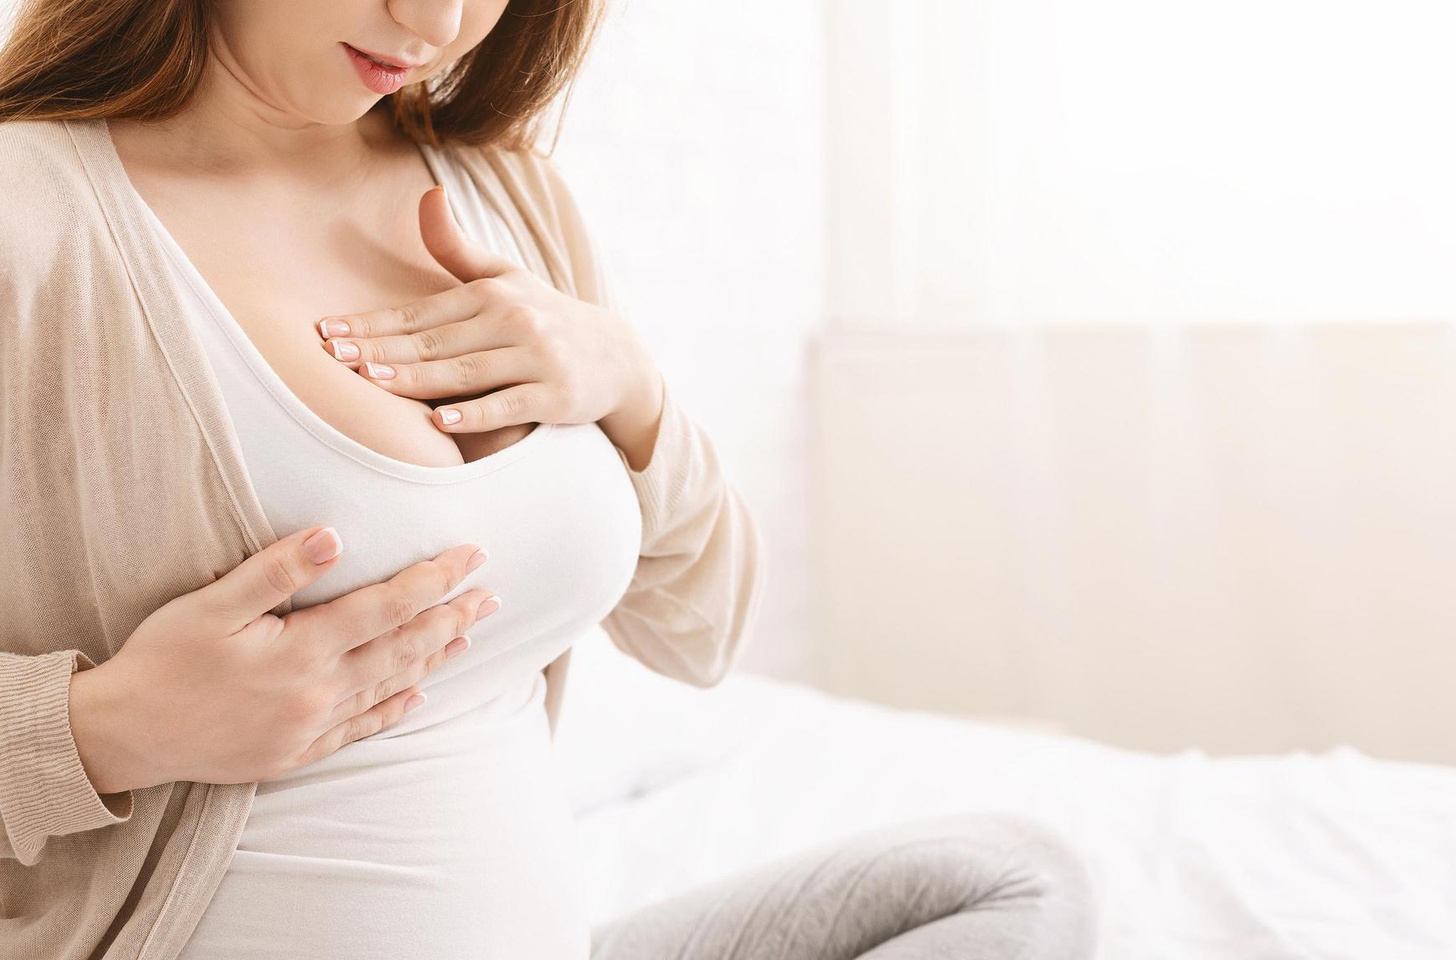 груди болят может ли это говорить о беременности фото 74